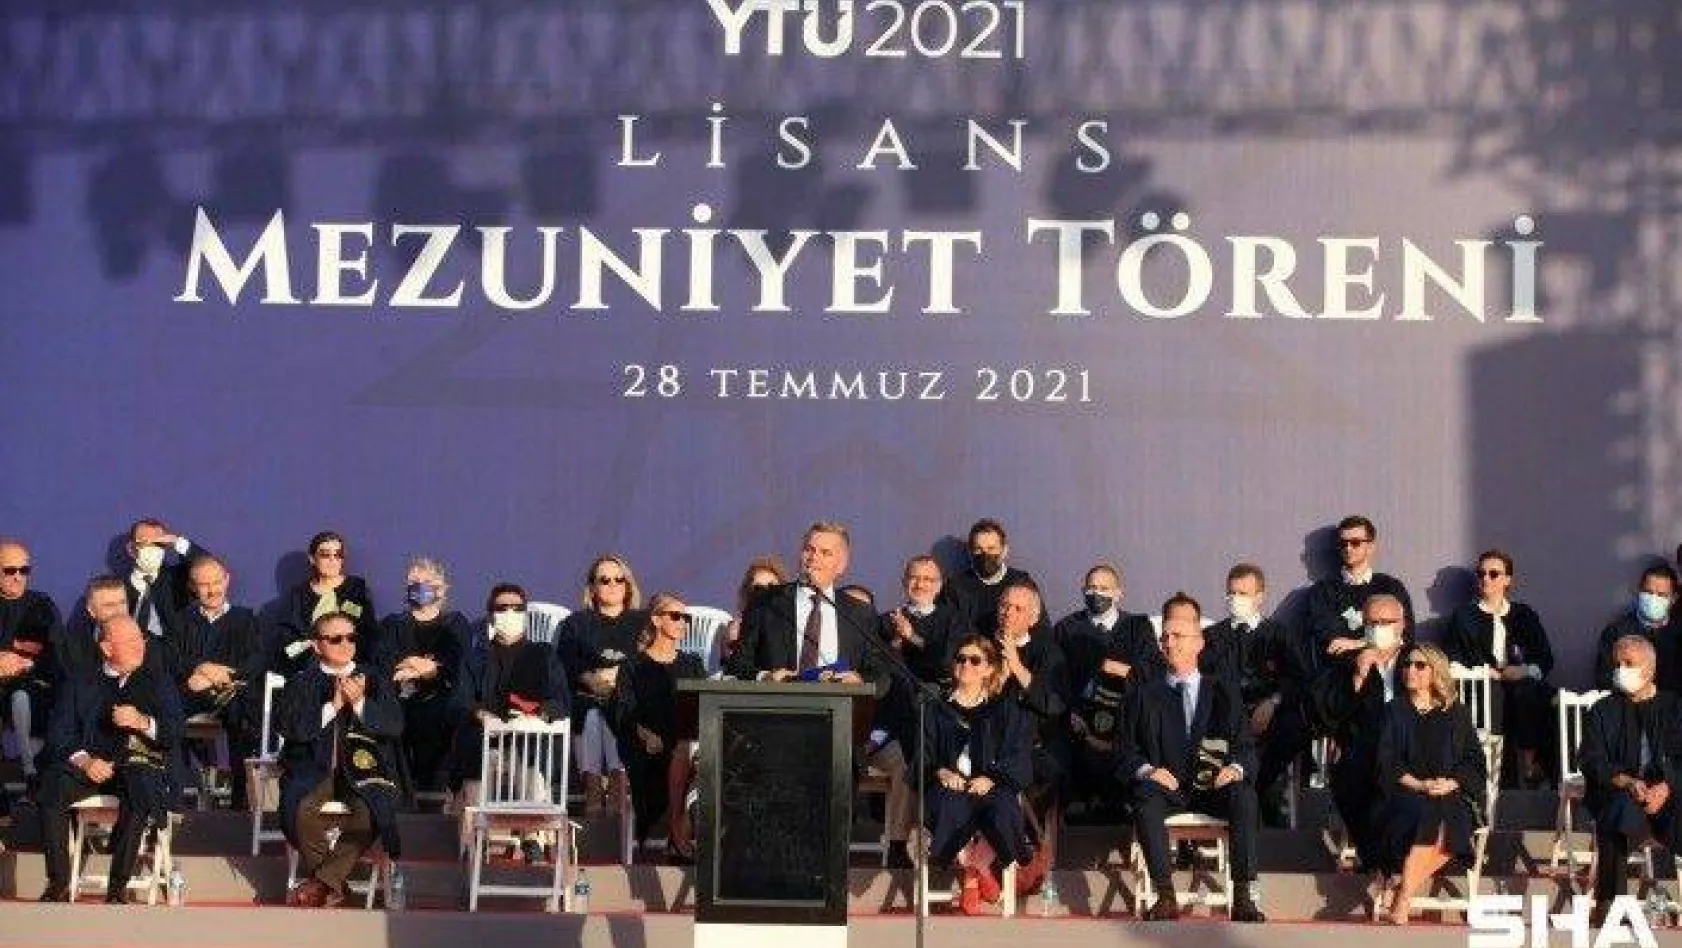 Turkcell GM Erkan, yeni mezunlara seslendi: 'Vakit kaybetmeden harekete geçin'